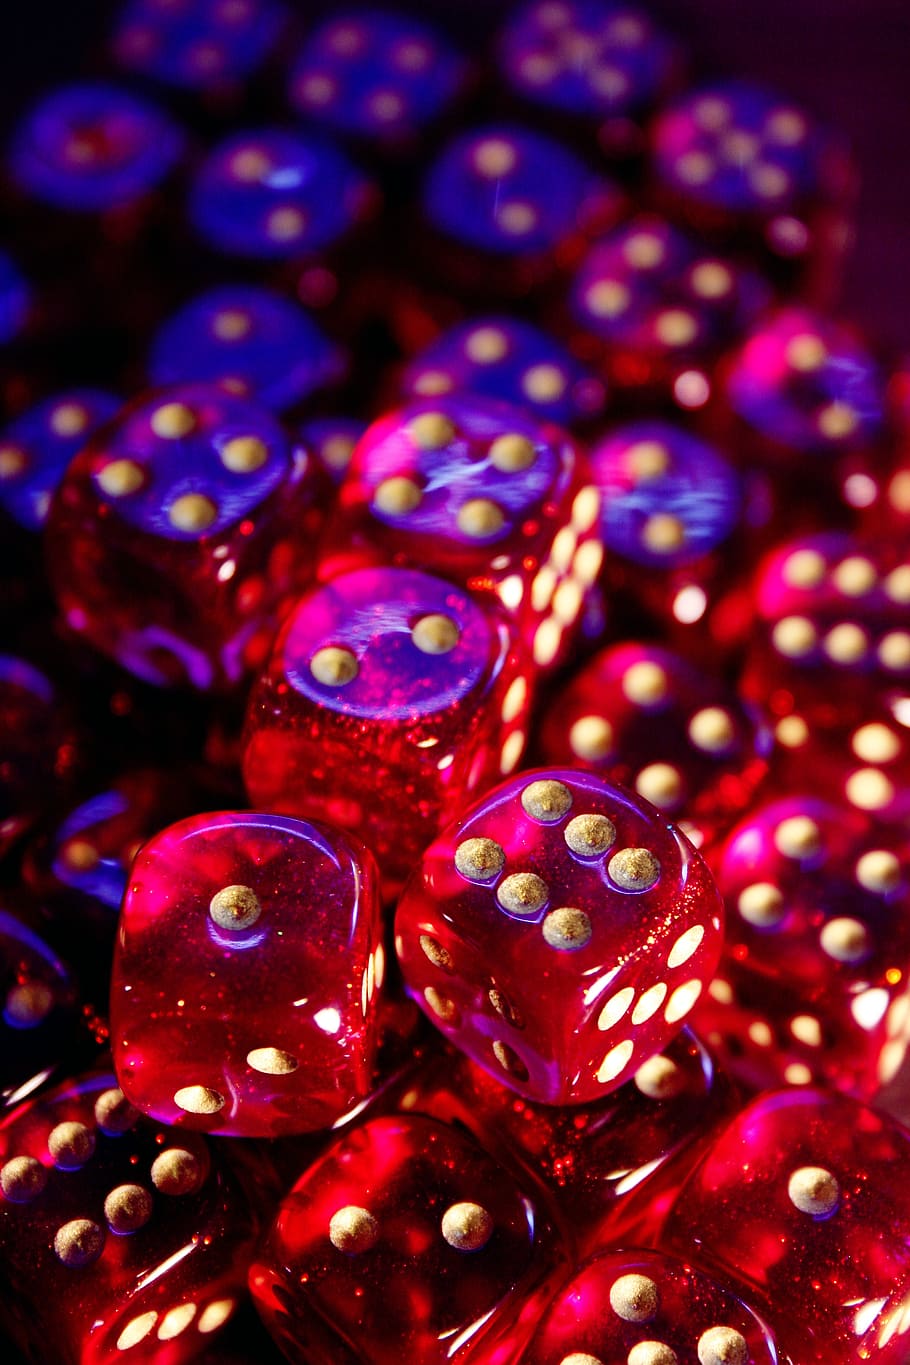 lote de dados rojos, cubo, juego de rol, paga, velocidad instantánea, cubo de números, juegos de azar, suerte, rojo, rosa